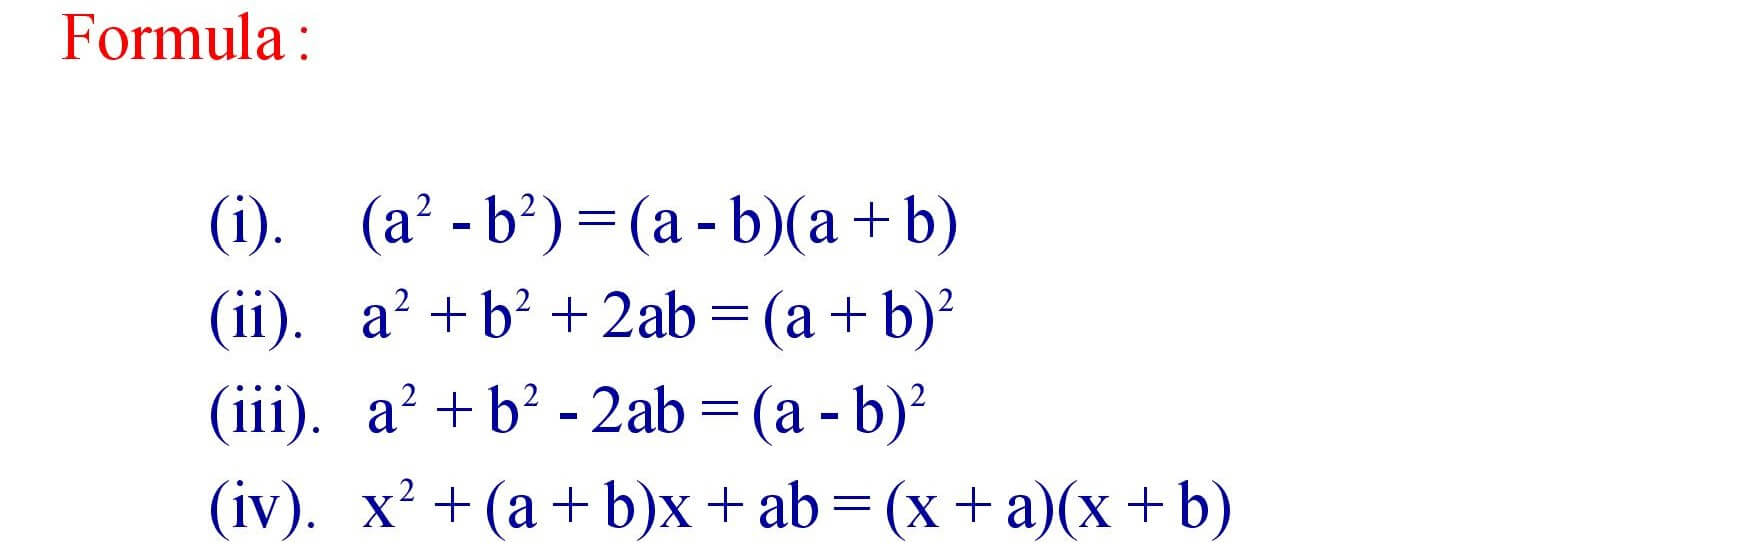 Formula of Polynomials